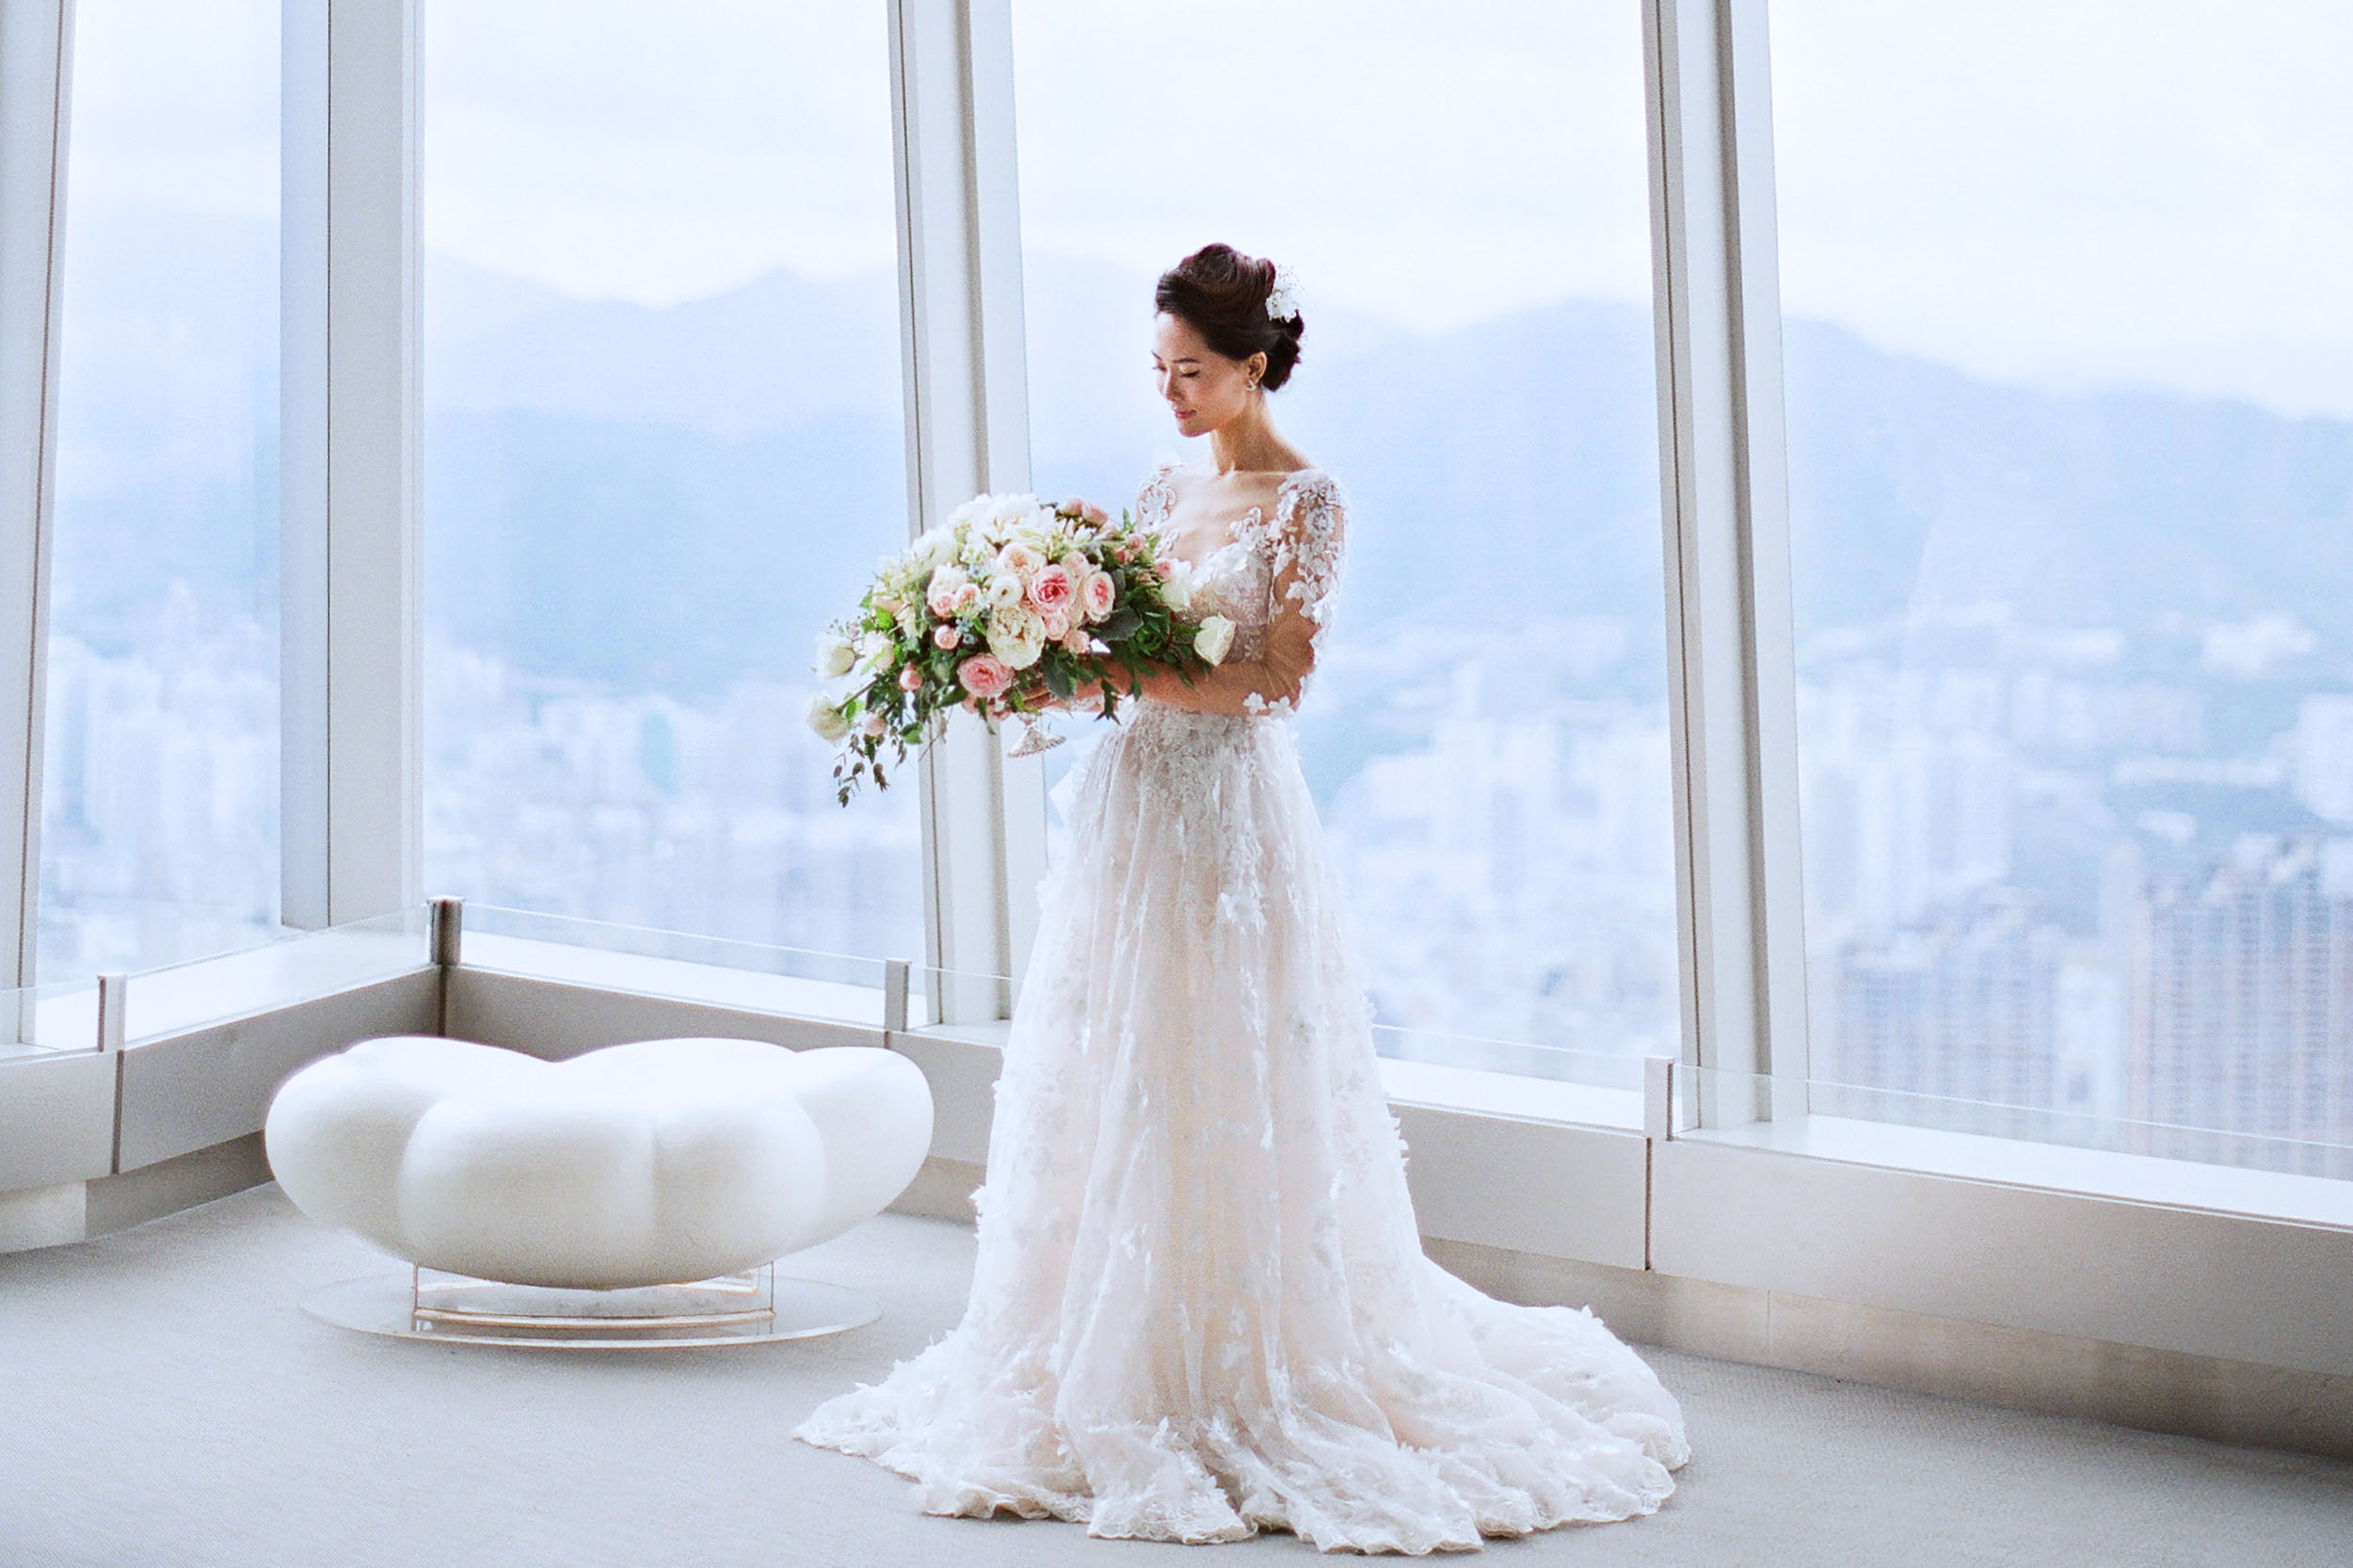 Unique wedding venue in Hong Kong | sky100 Weddings